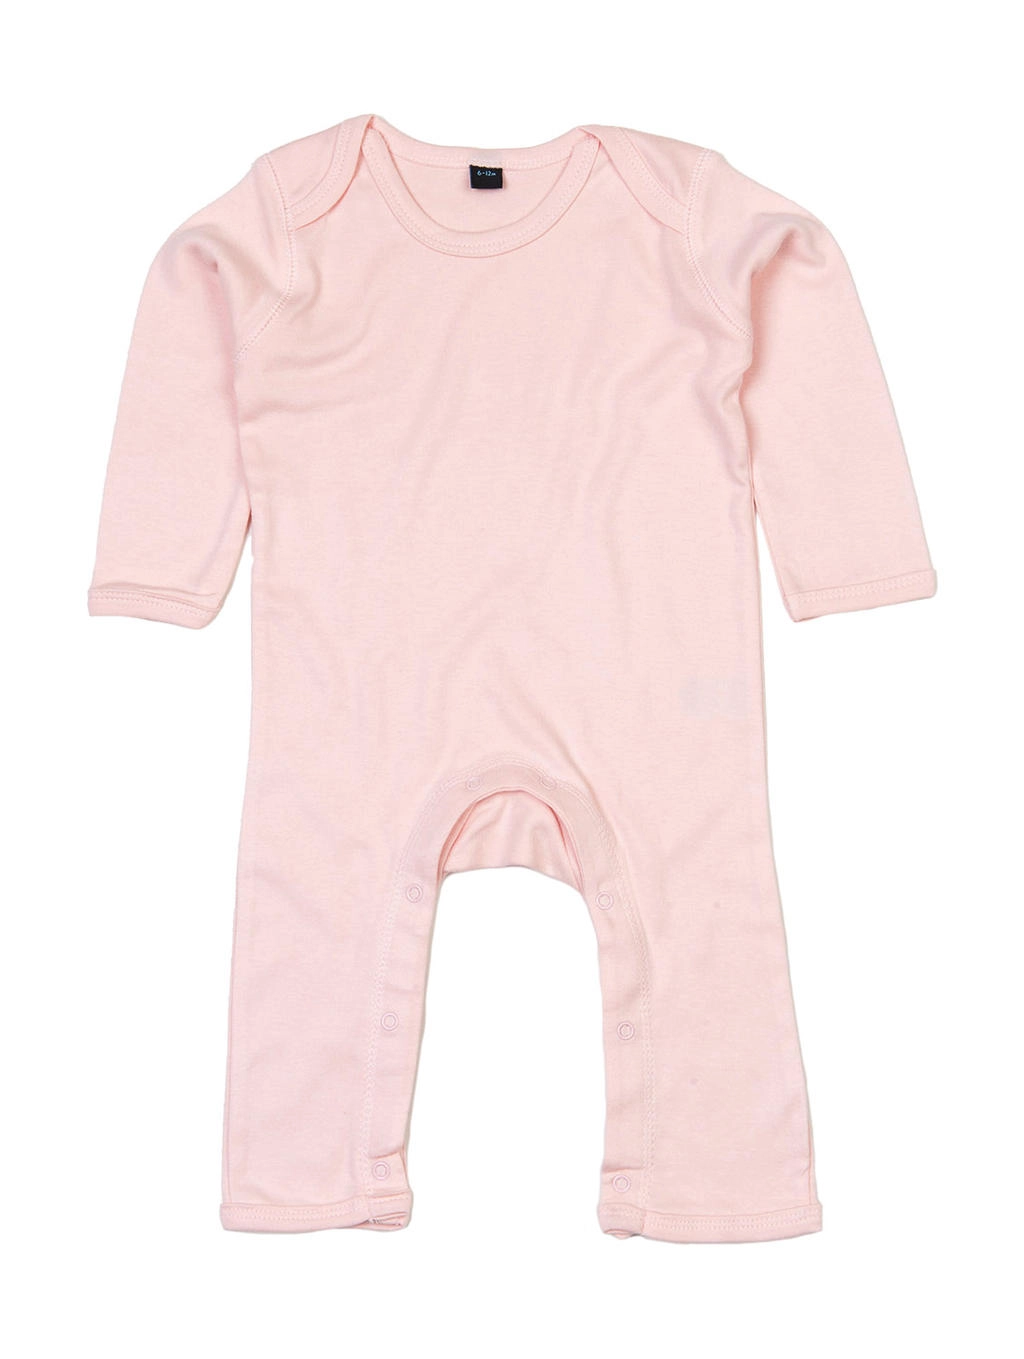 Baby Rompasuit zum Besticken und Bedrucken in der Farbe Powder Pink mit Ihren Logo, Schriftzug oder Motiv.